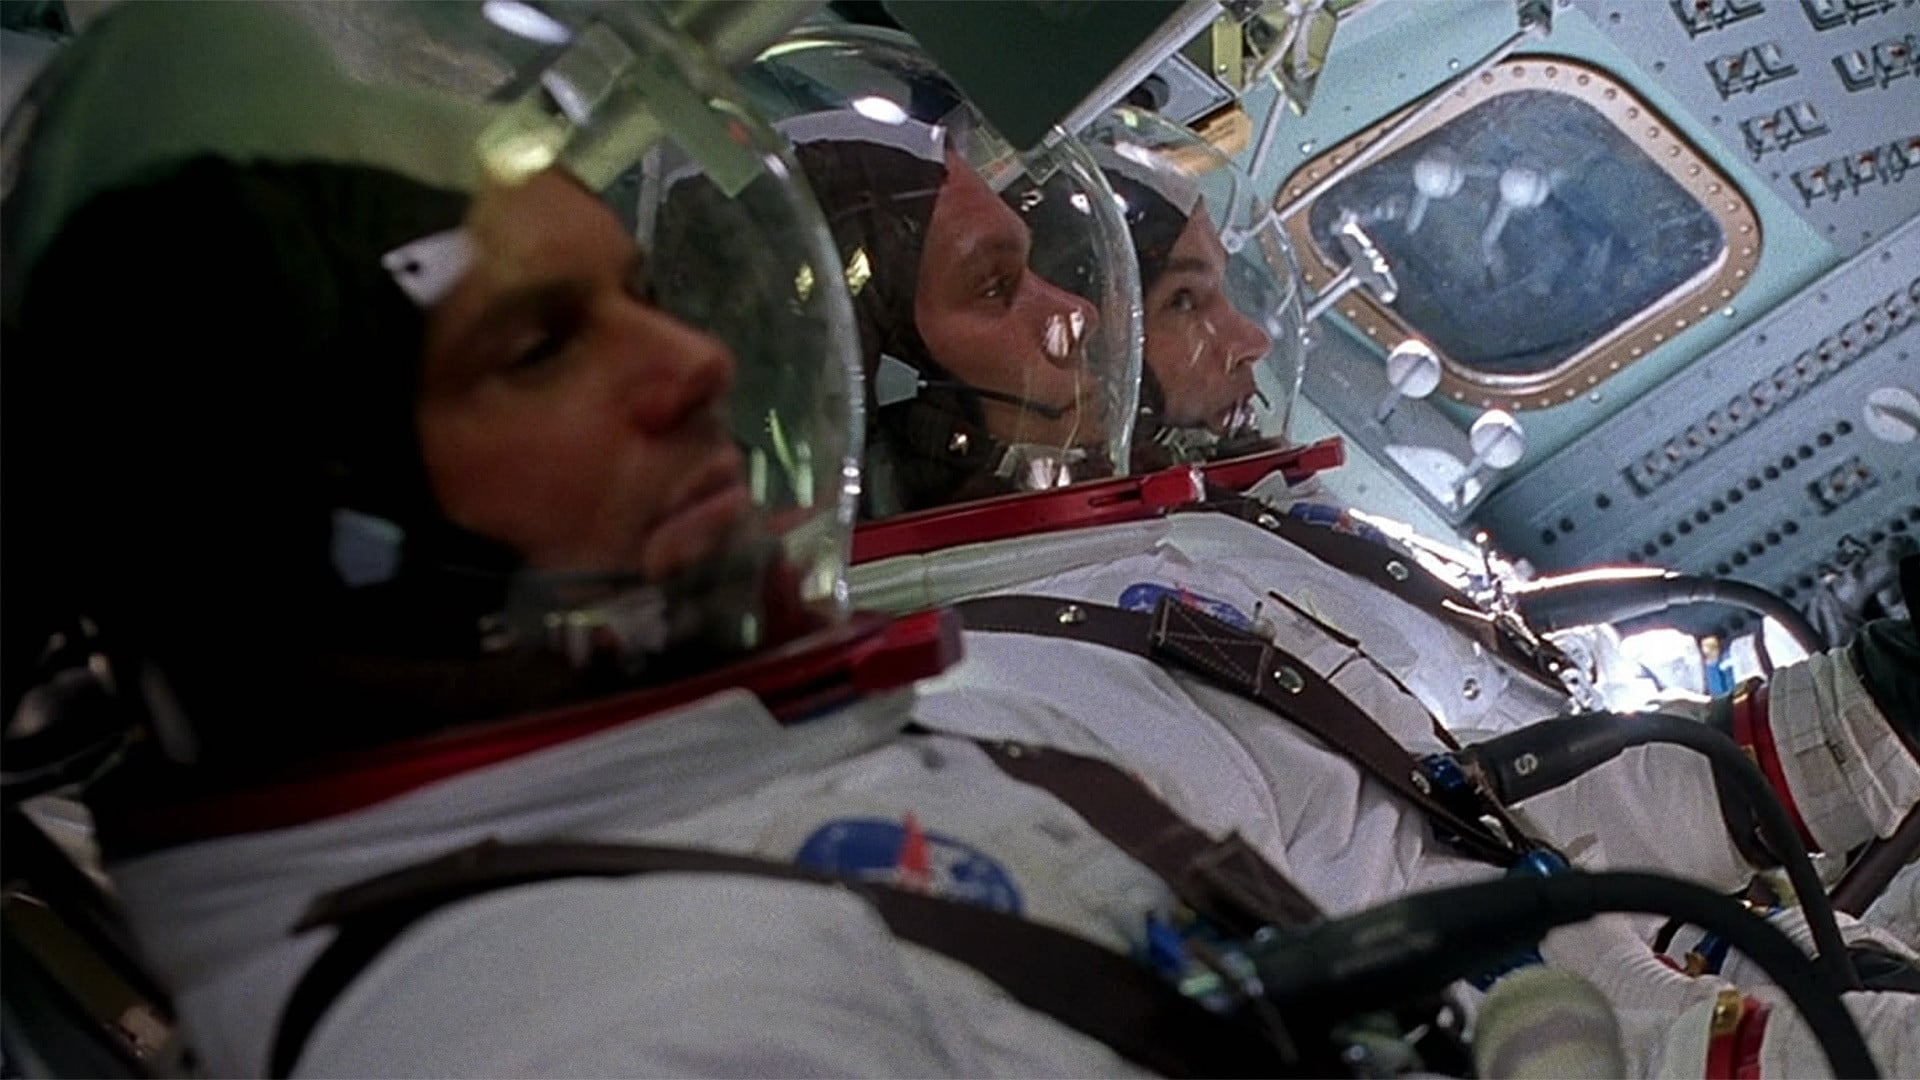 Apolo 13 (1995)